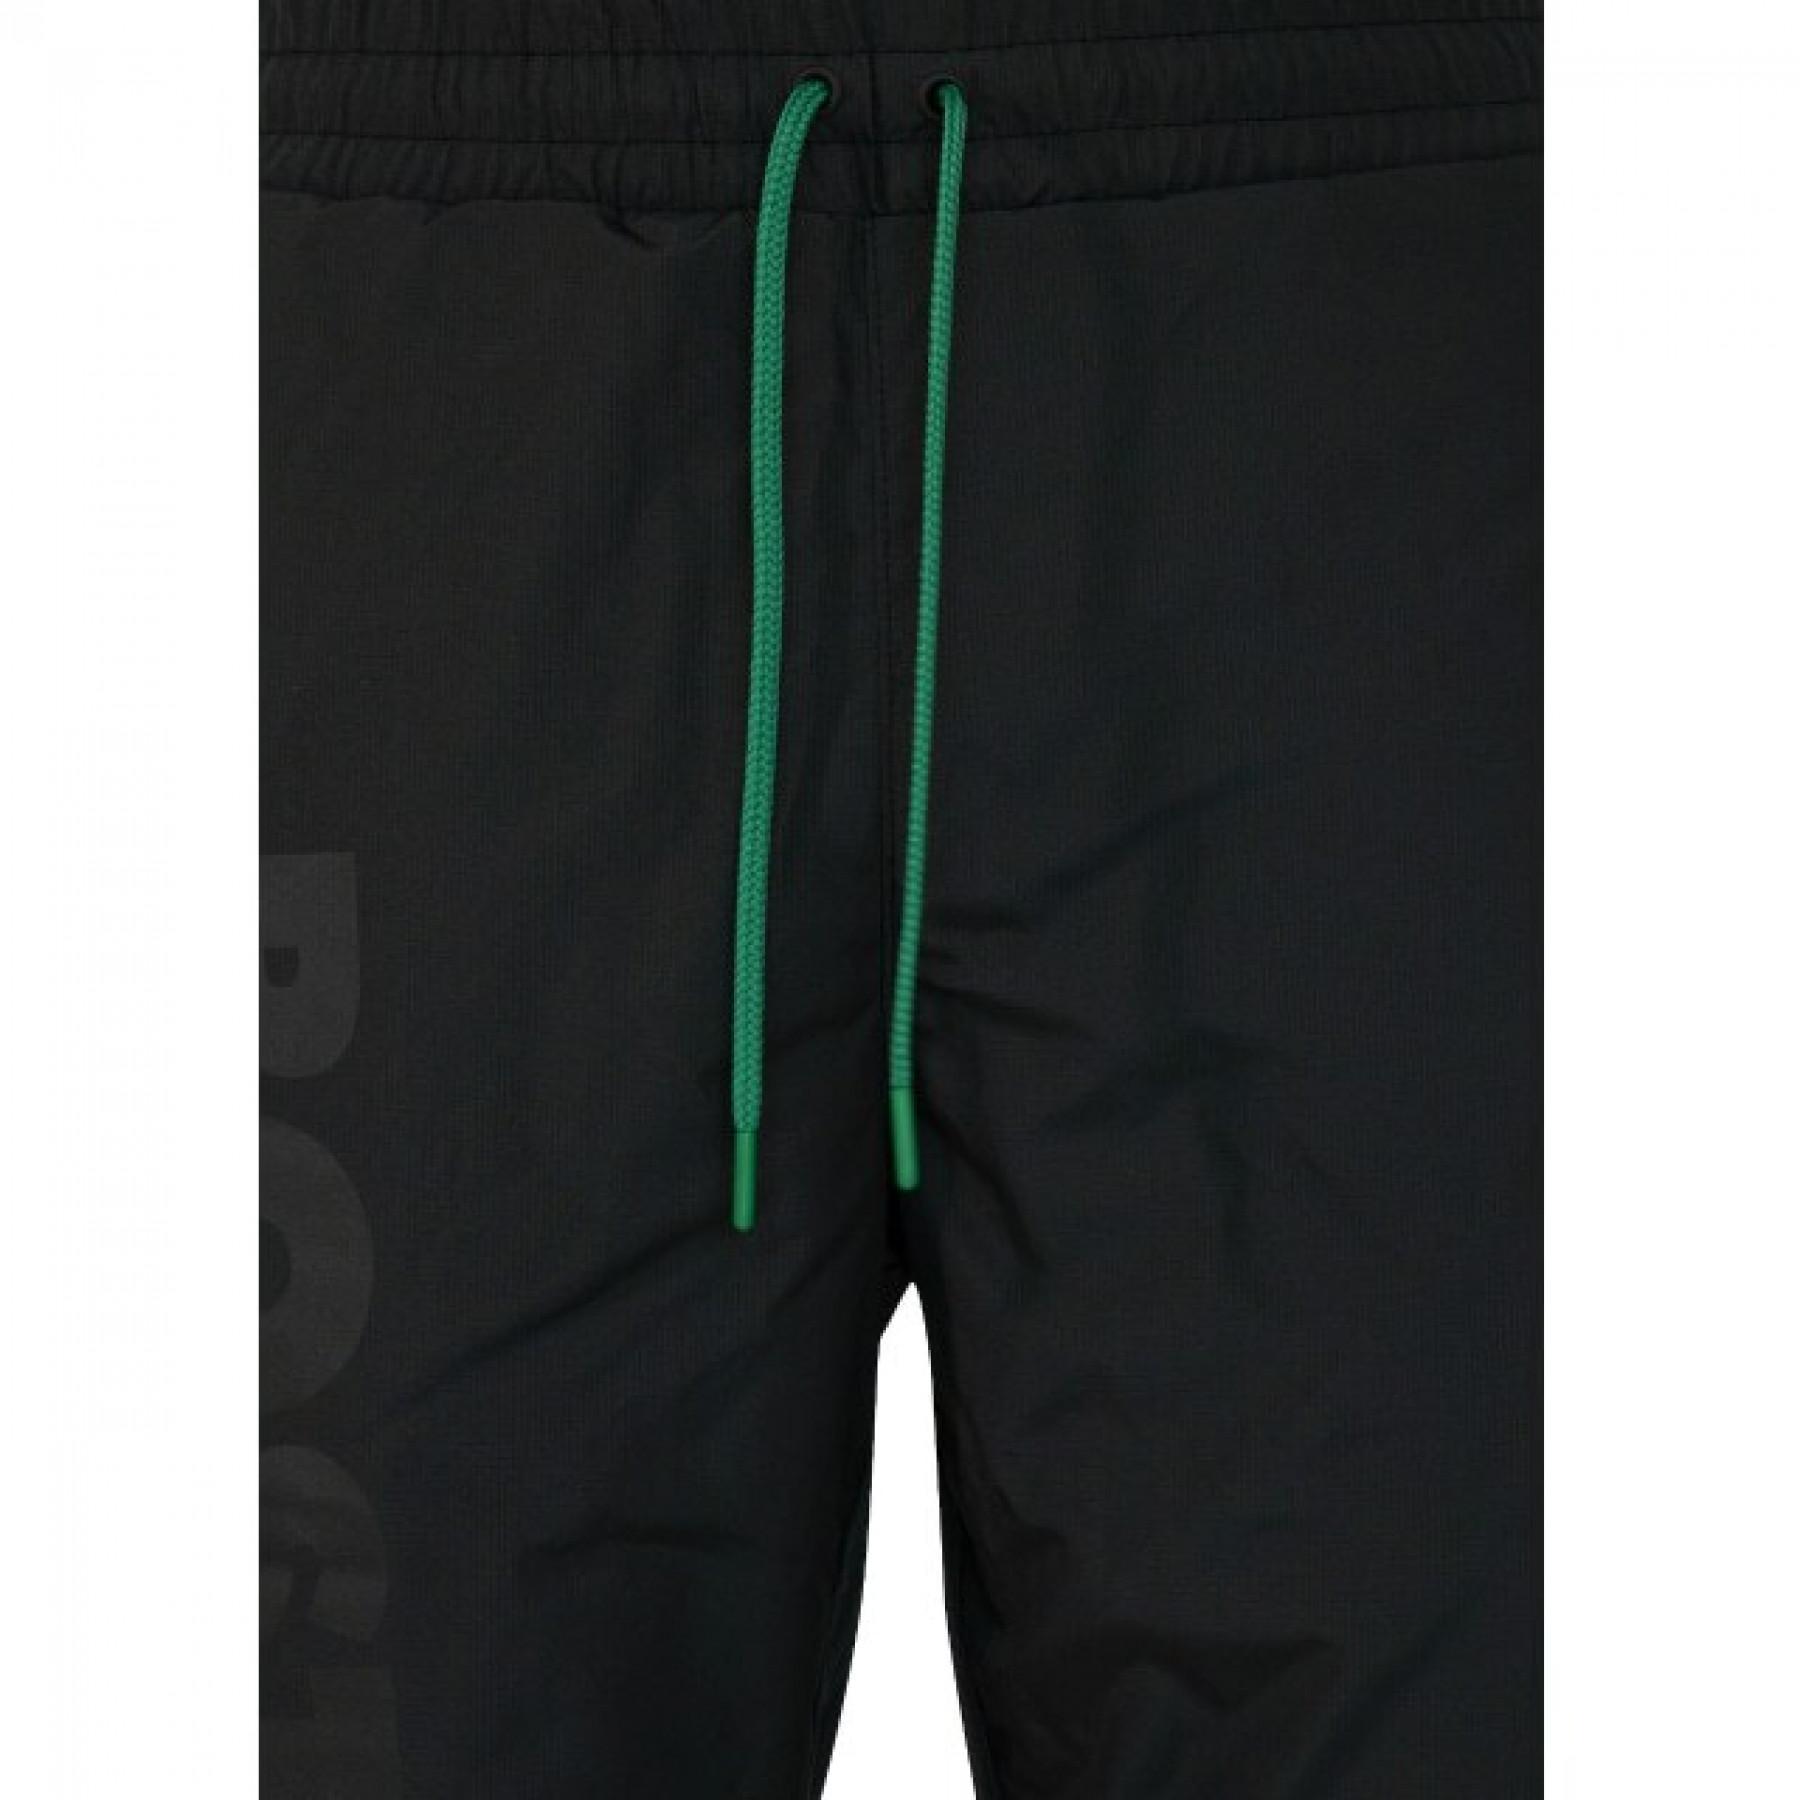 Pants New Era Celtics Wordmark